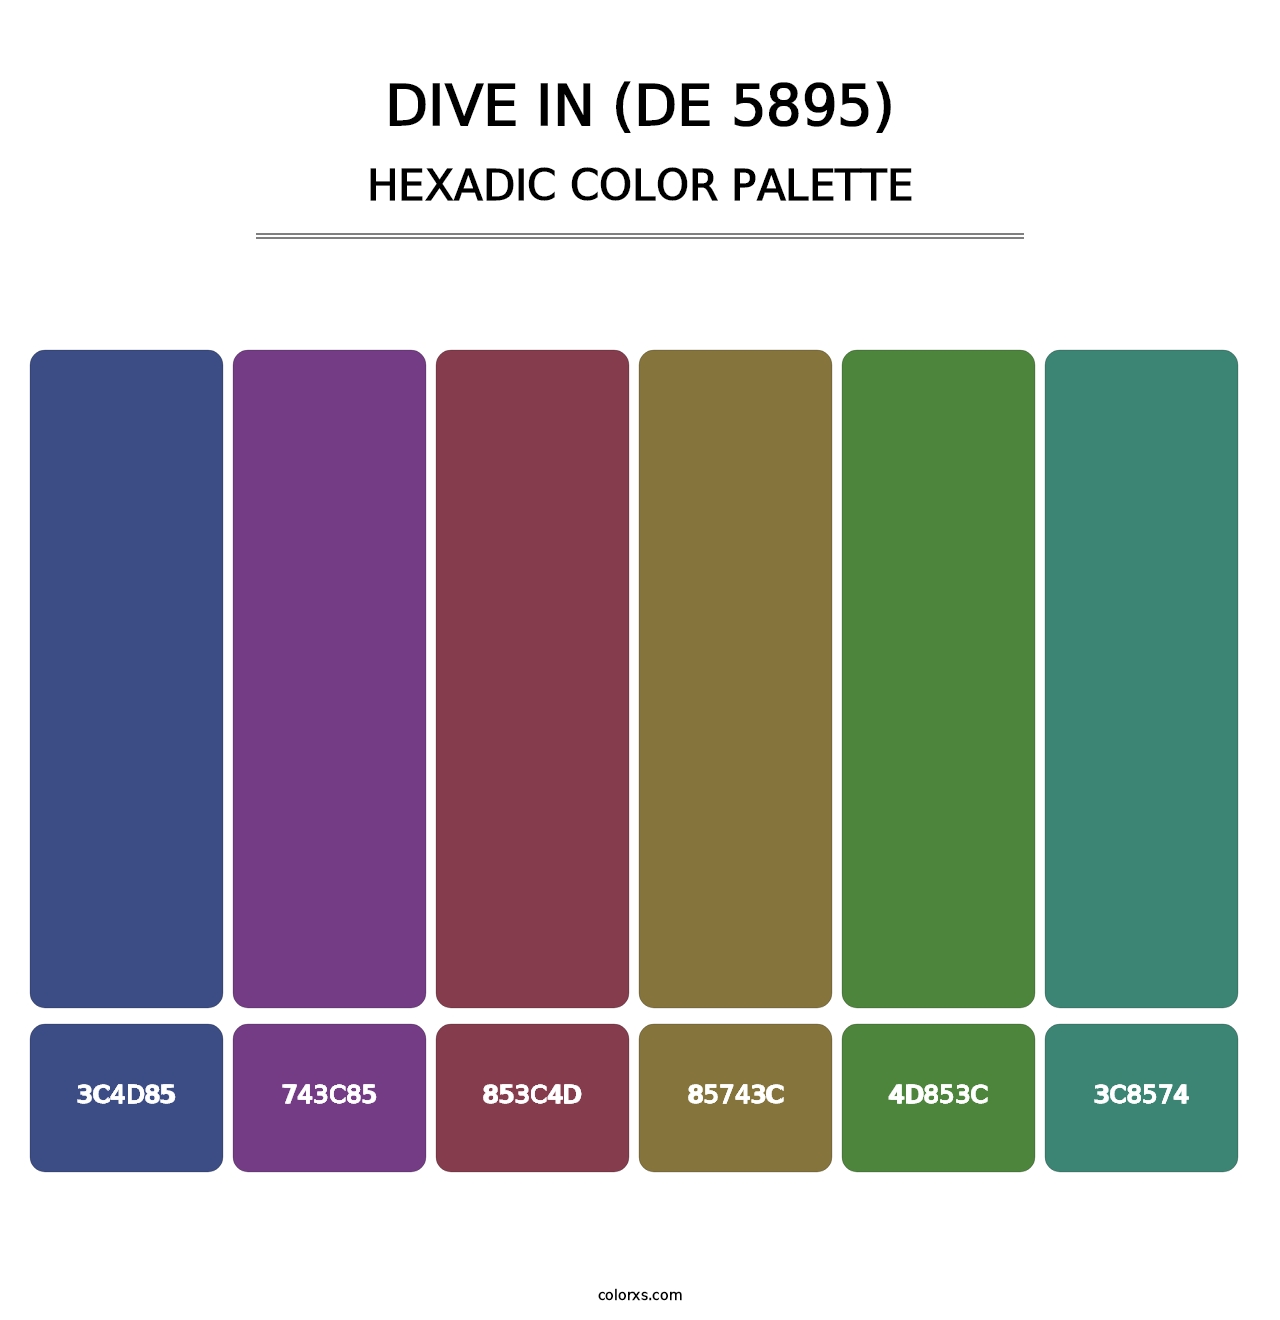 Dive In (DE 5895) - Hexadic Color Palette